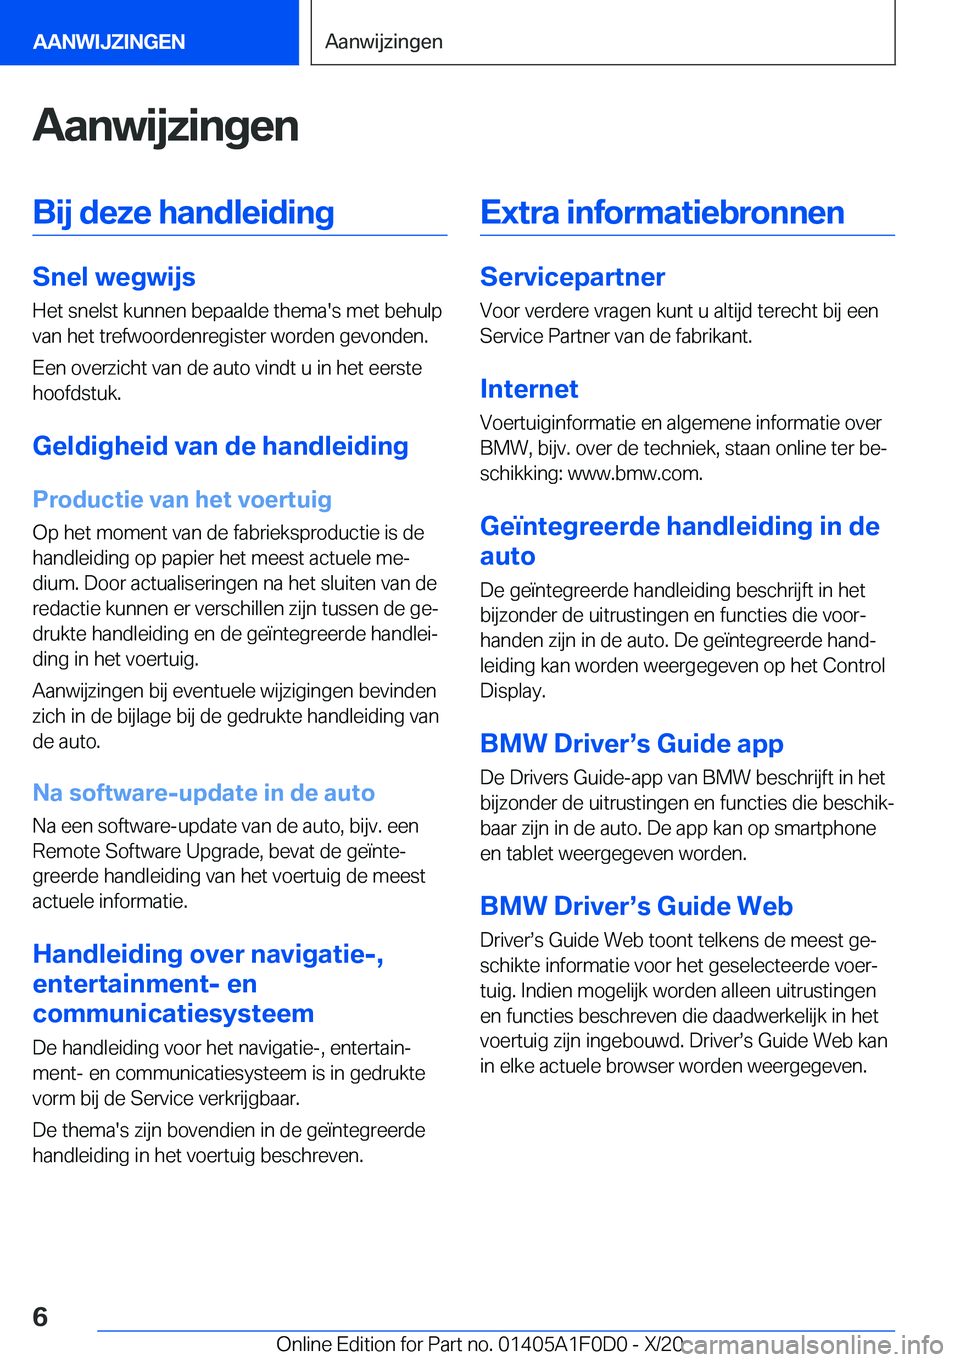 BMW X6 2021  Instructieboekjes (in Dutch) �A�a�n�w�i�j�z�i�n�g�e�n�B�i�j��d�e�z�e��h�a�n�d�l�e�i�d�i�n�g
�S�n�e�l��w�e�g�w�i�j�s
�H�e�t��s�n�e�l�s�t��k�u�n�n�e�n��b�e�p�a�a�l�d�e��t�h�e�m�a�'�s��m�e�t��b�e�h�u�l�p
�v�a�n��h�e�t�